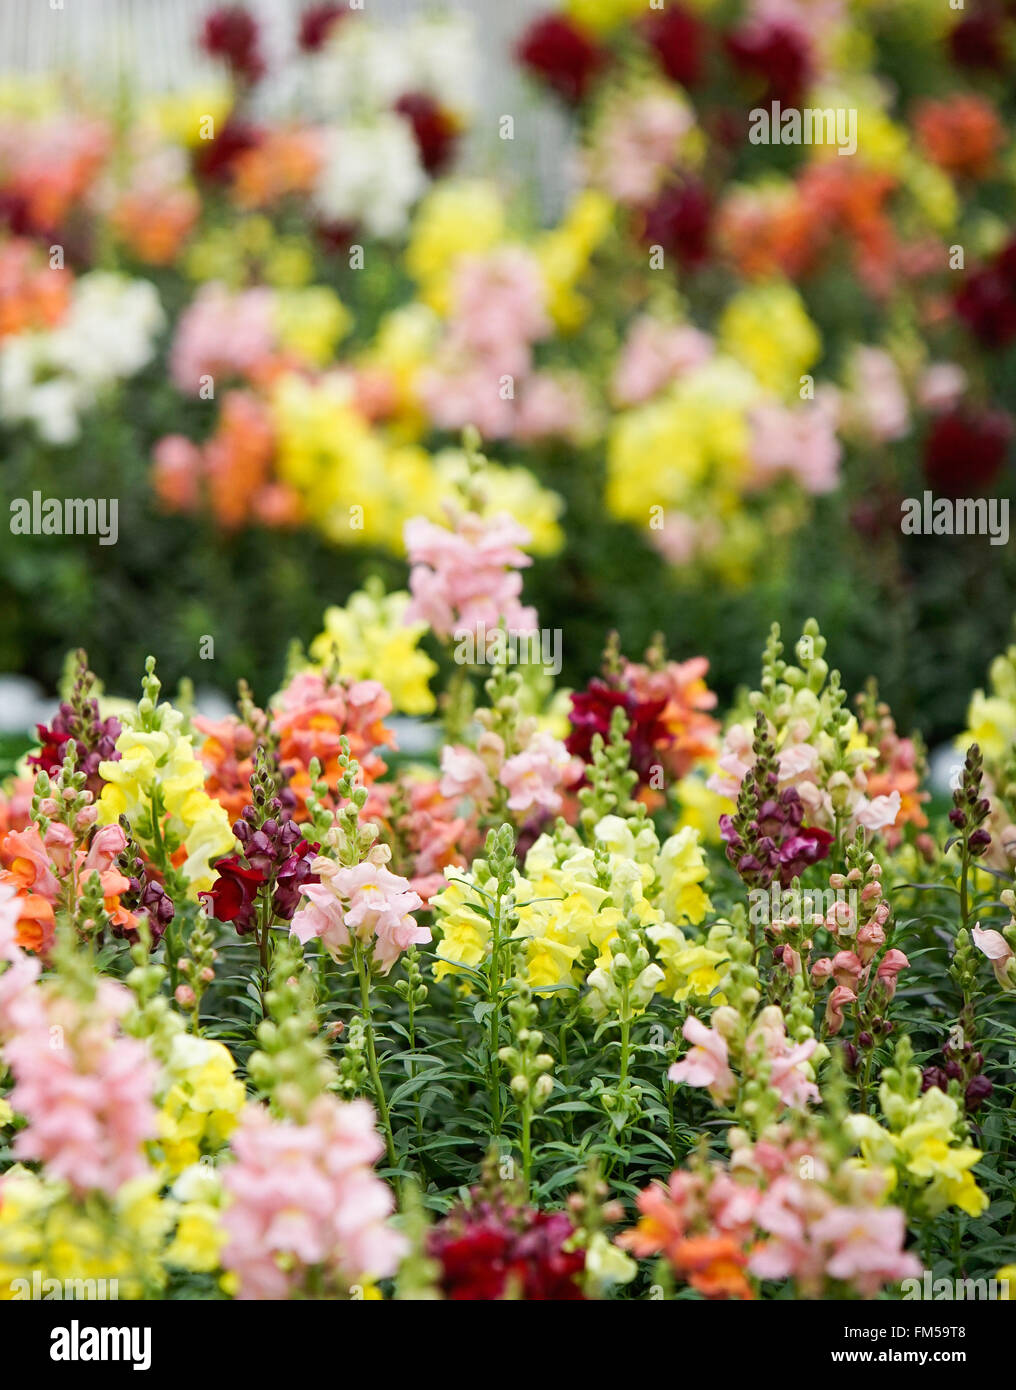 Hong Kong, China. 11 Mar, 2016. Foto tomada el 11 de marzo de 2016 muestra las flores de Hong Kong, exhibición de flores en el parque Victoria de Hong Kong, sur de China, 11 de marzo de 2016. © Ng Wing Kin/Xinhua/Alamy Live News Foto de stock